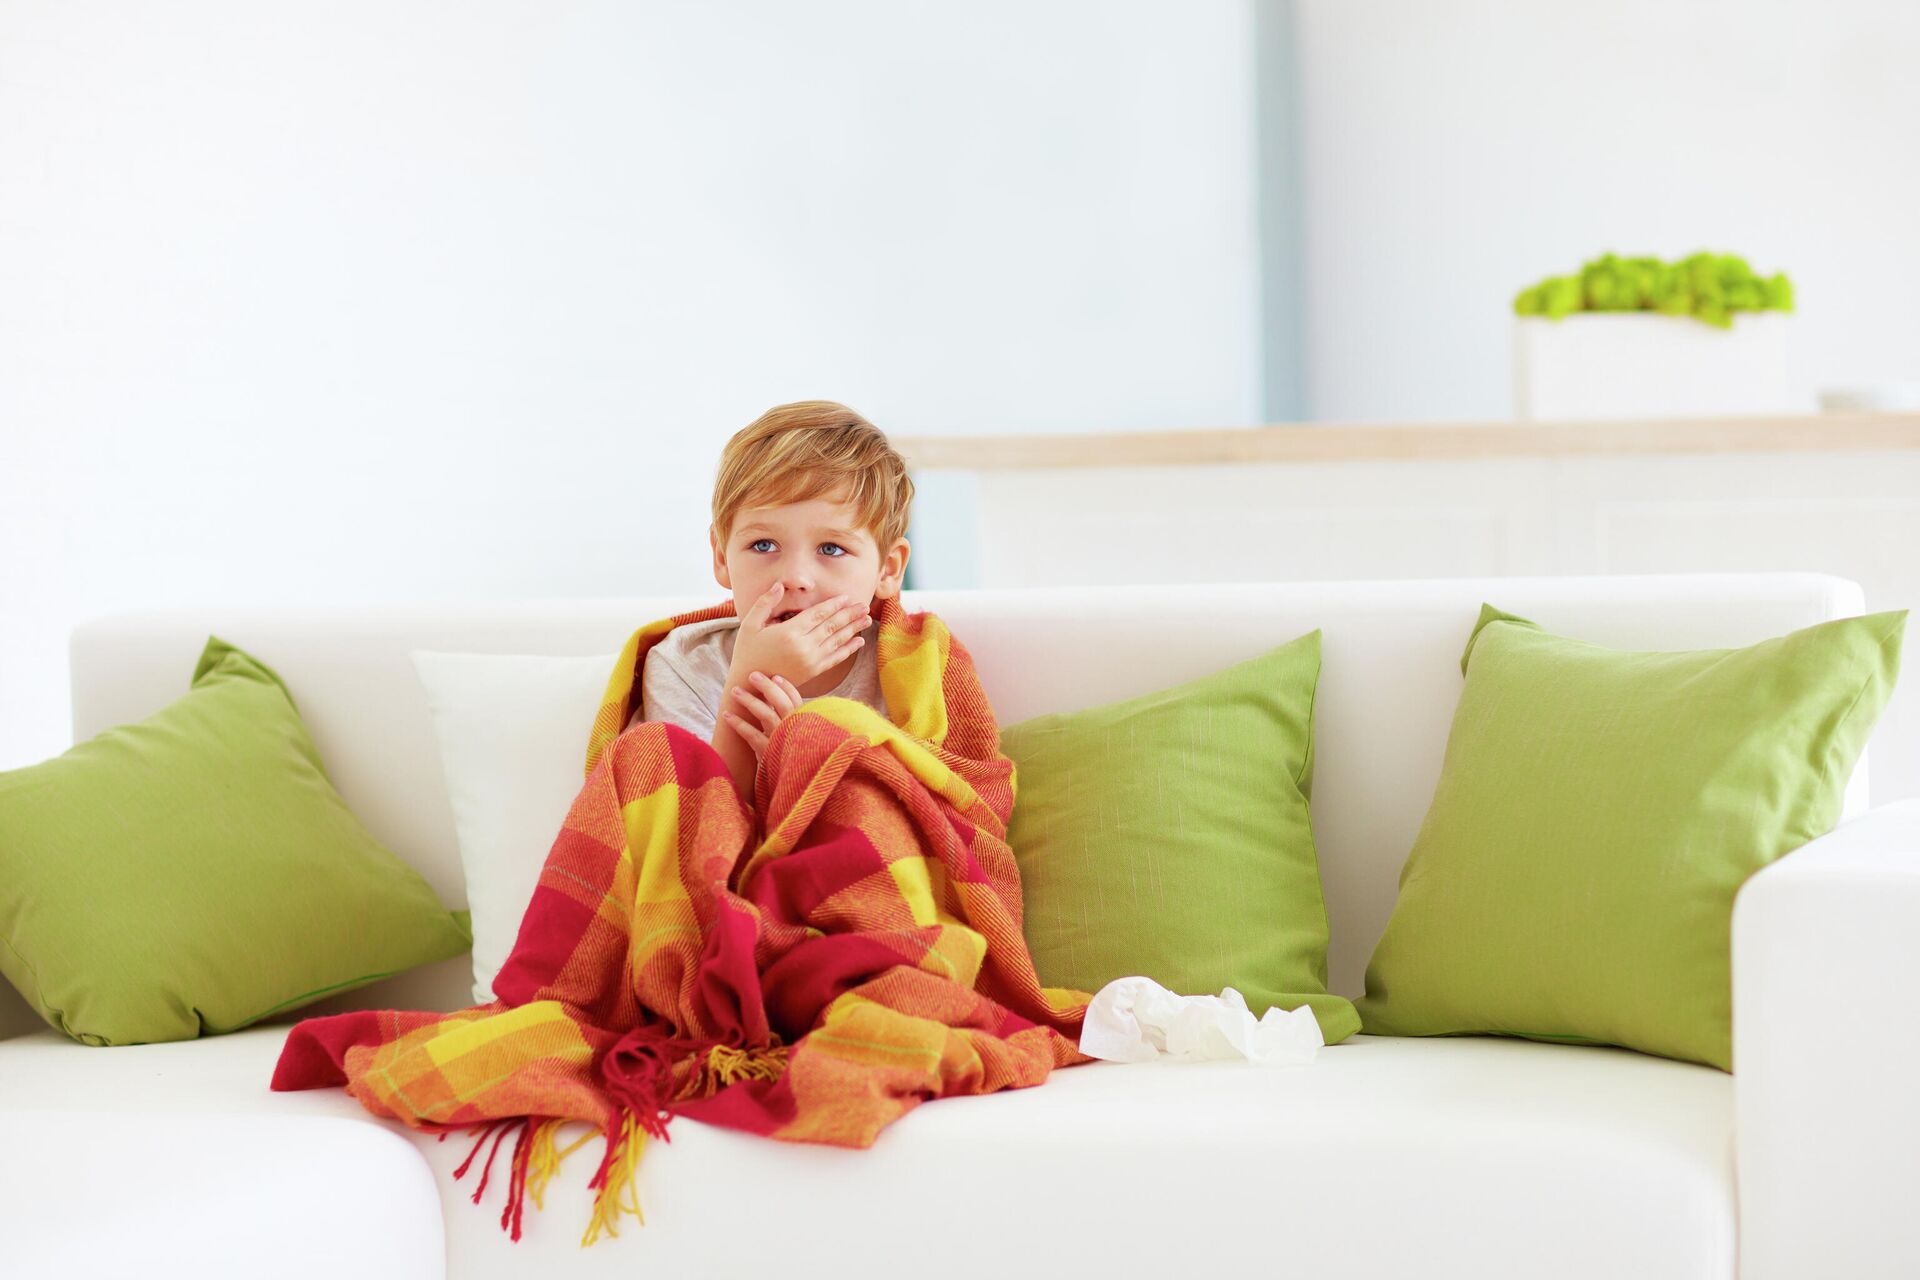 Чем лечить влажный кашель у ребенка